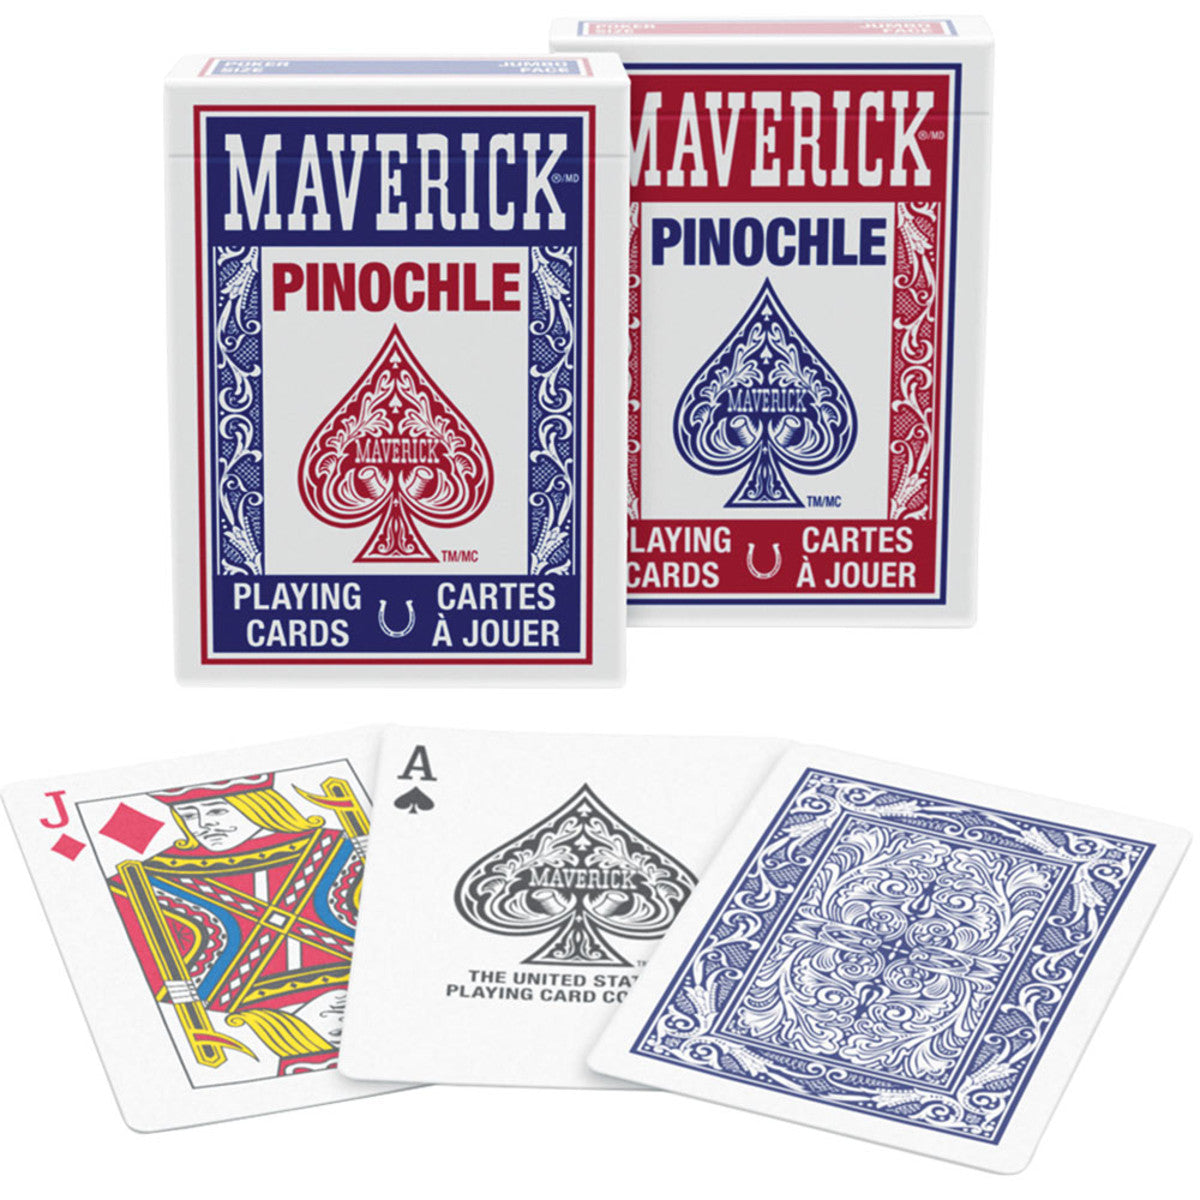 Maverick Pinochle Playing Cards